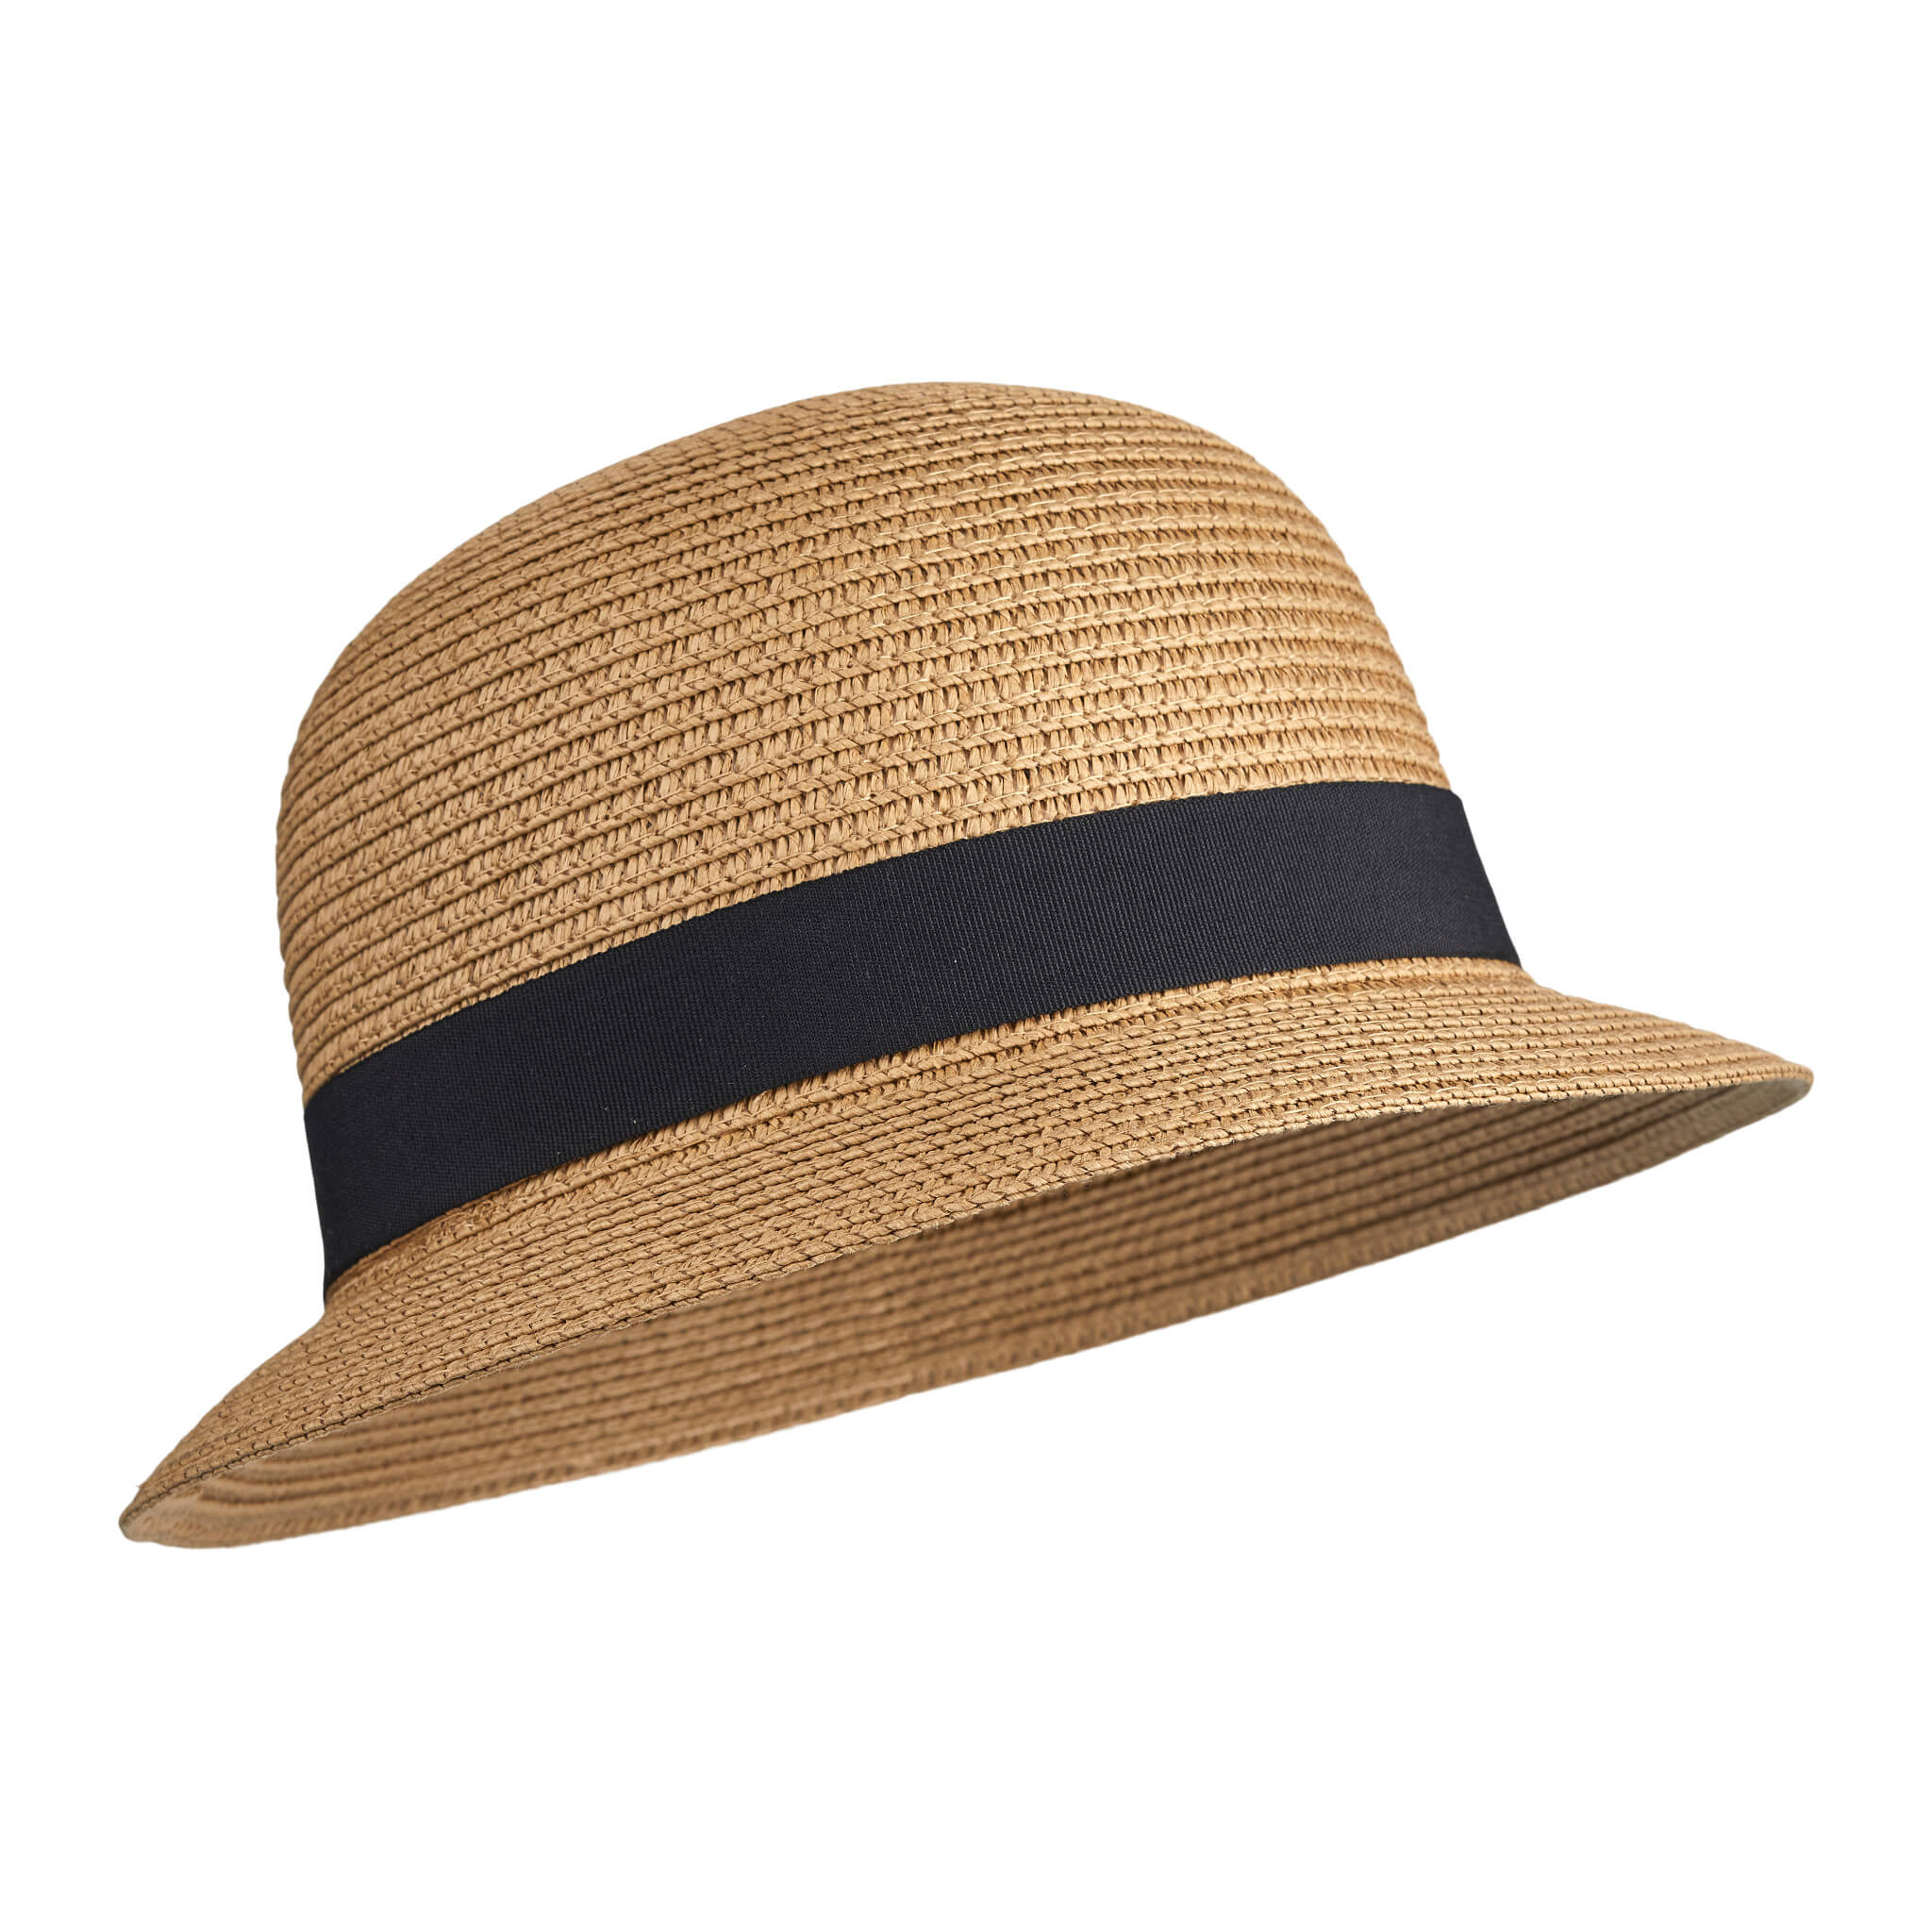 Liewood Children's Balder Bucket Hat in Brown/ Black